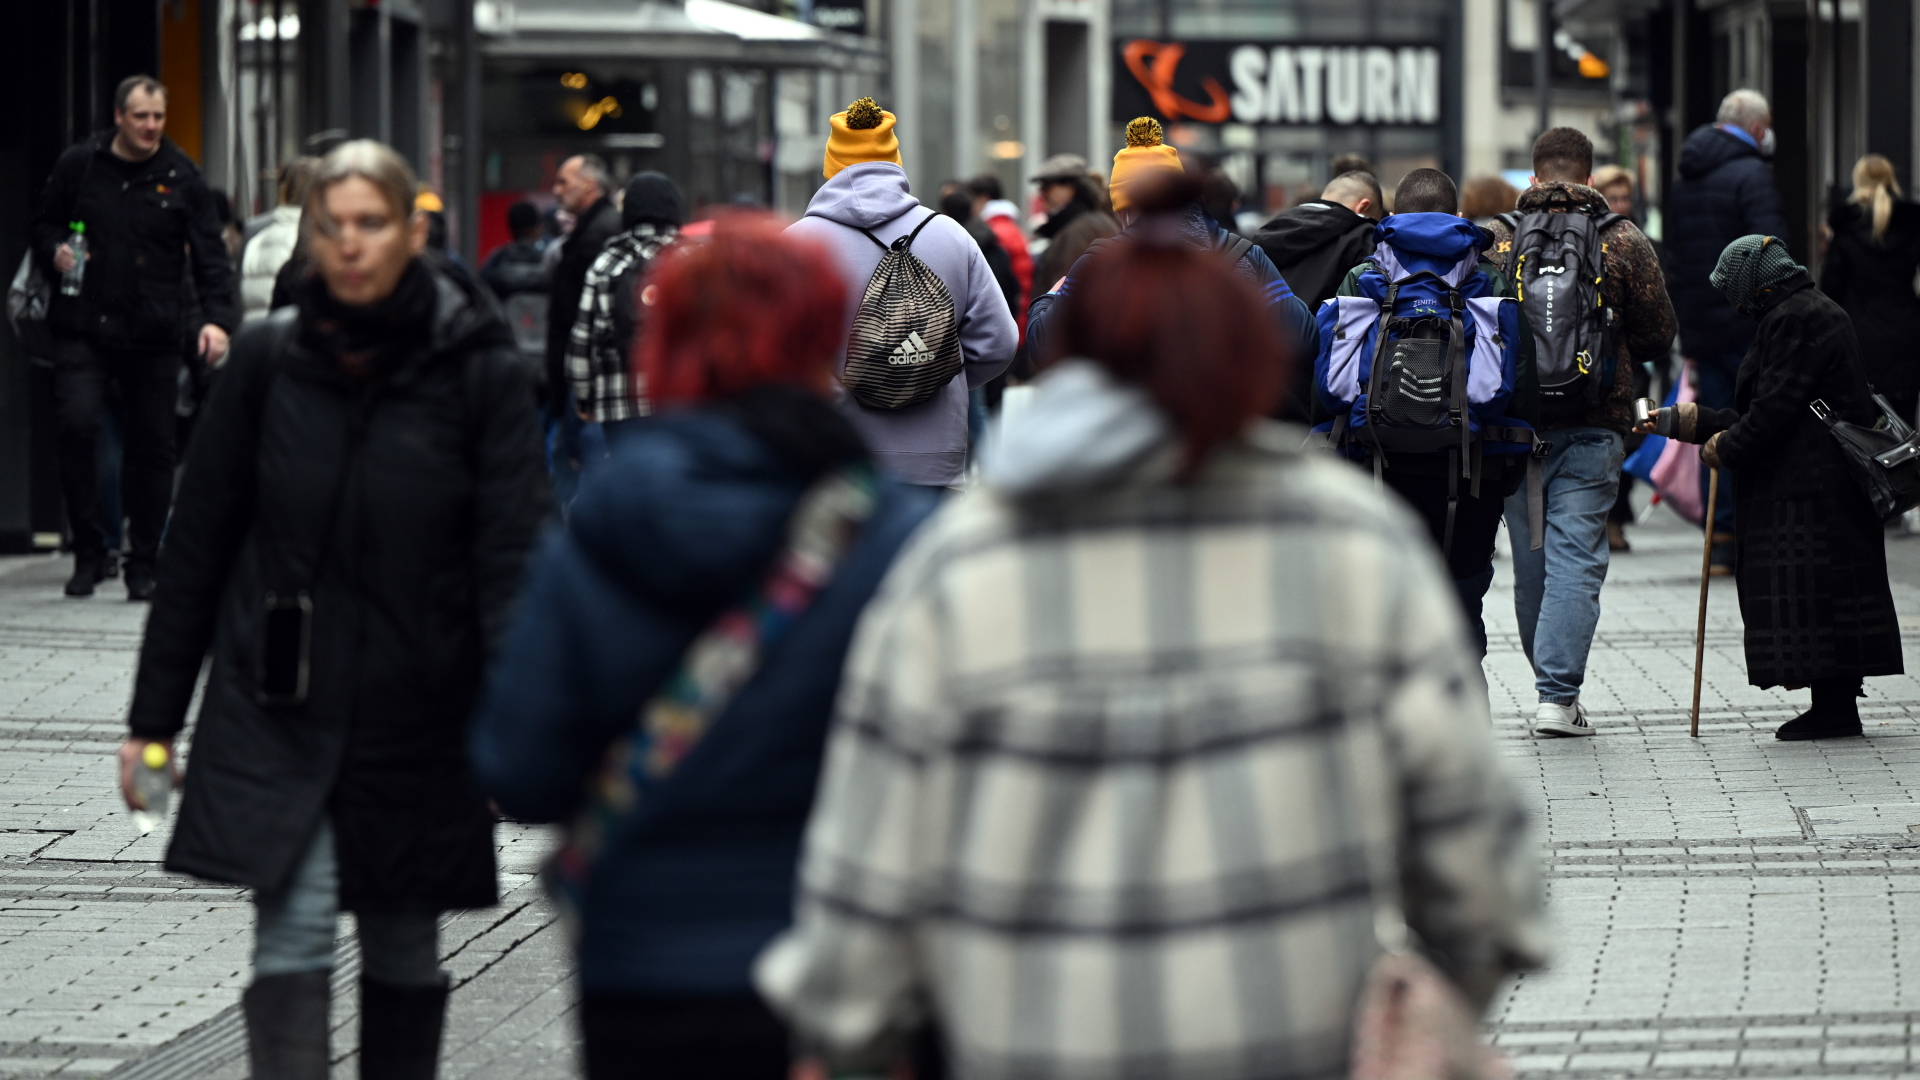  Zahlreiche Menschen gehen durch eine Einkaufsstraße in Köln.